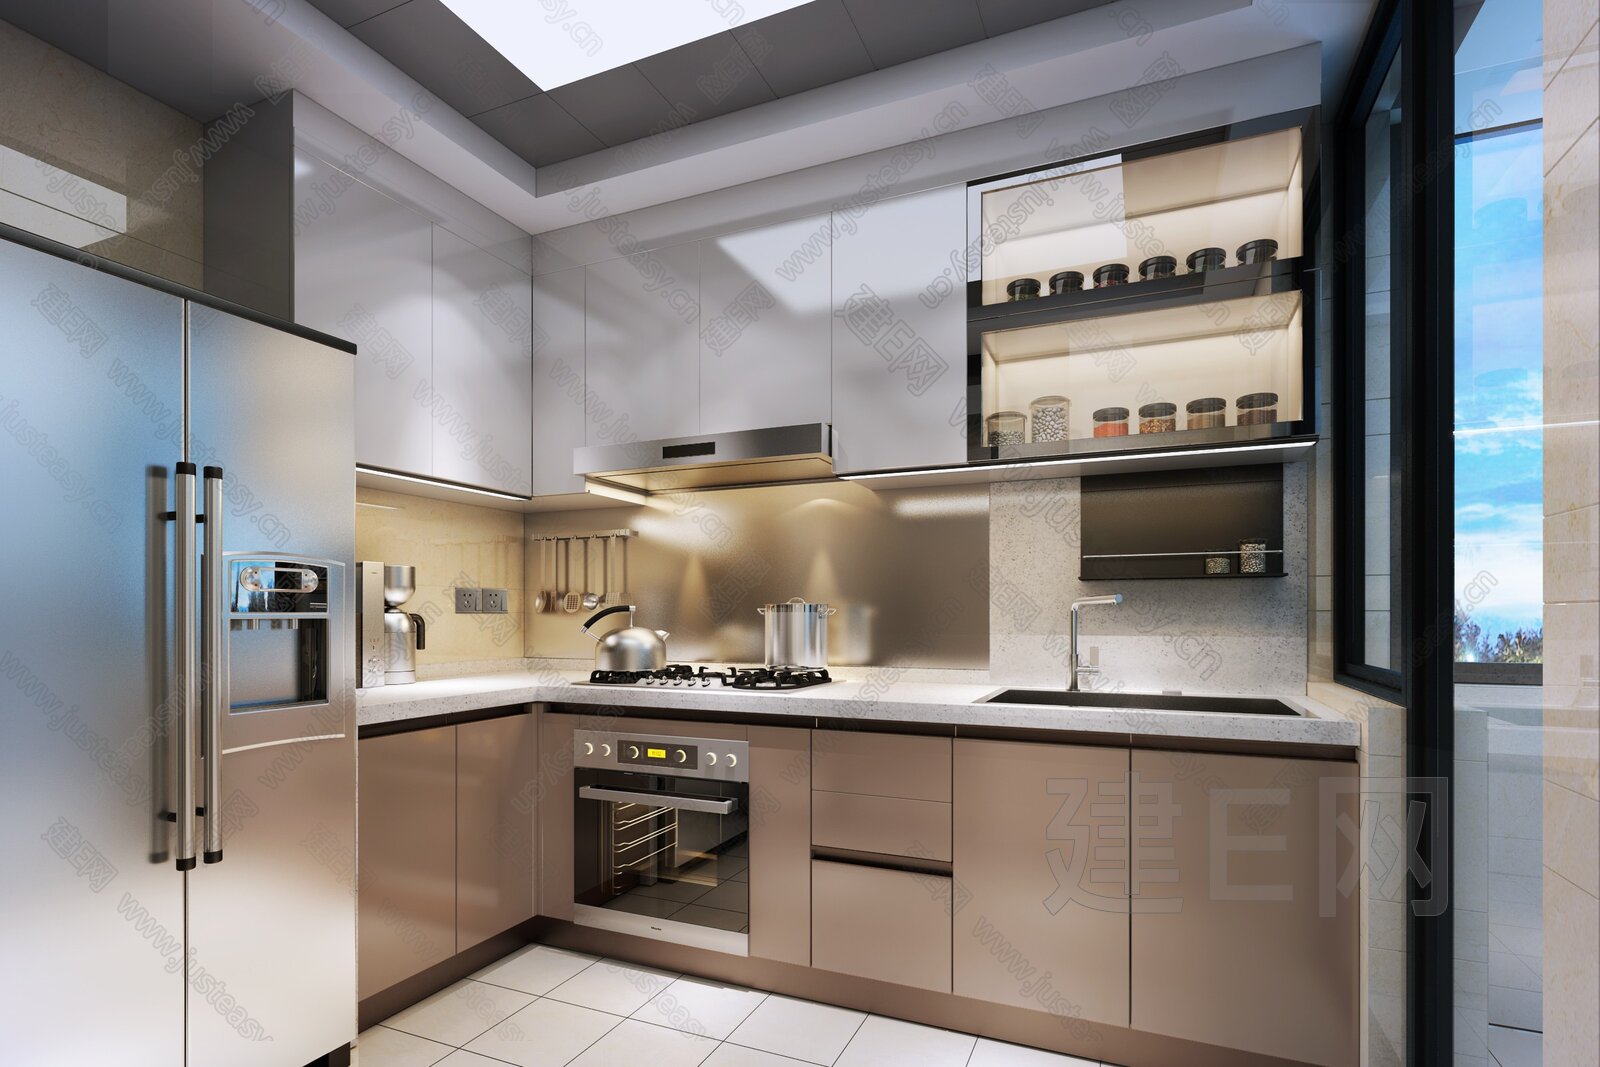 【现代厨房3d模型】建E网_现代厨房3d模型下载[ID:107432652]_打造3d现代厨房模型免费下载平台